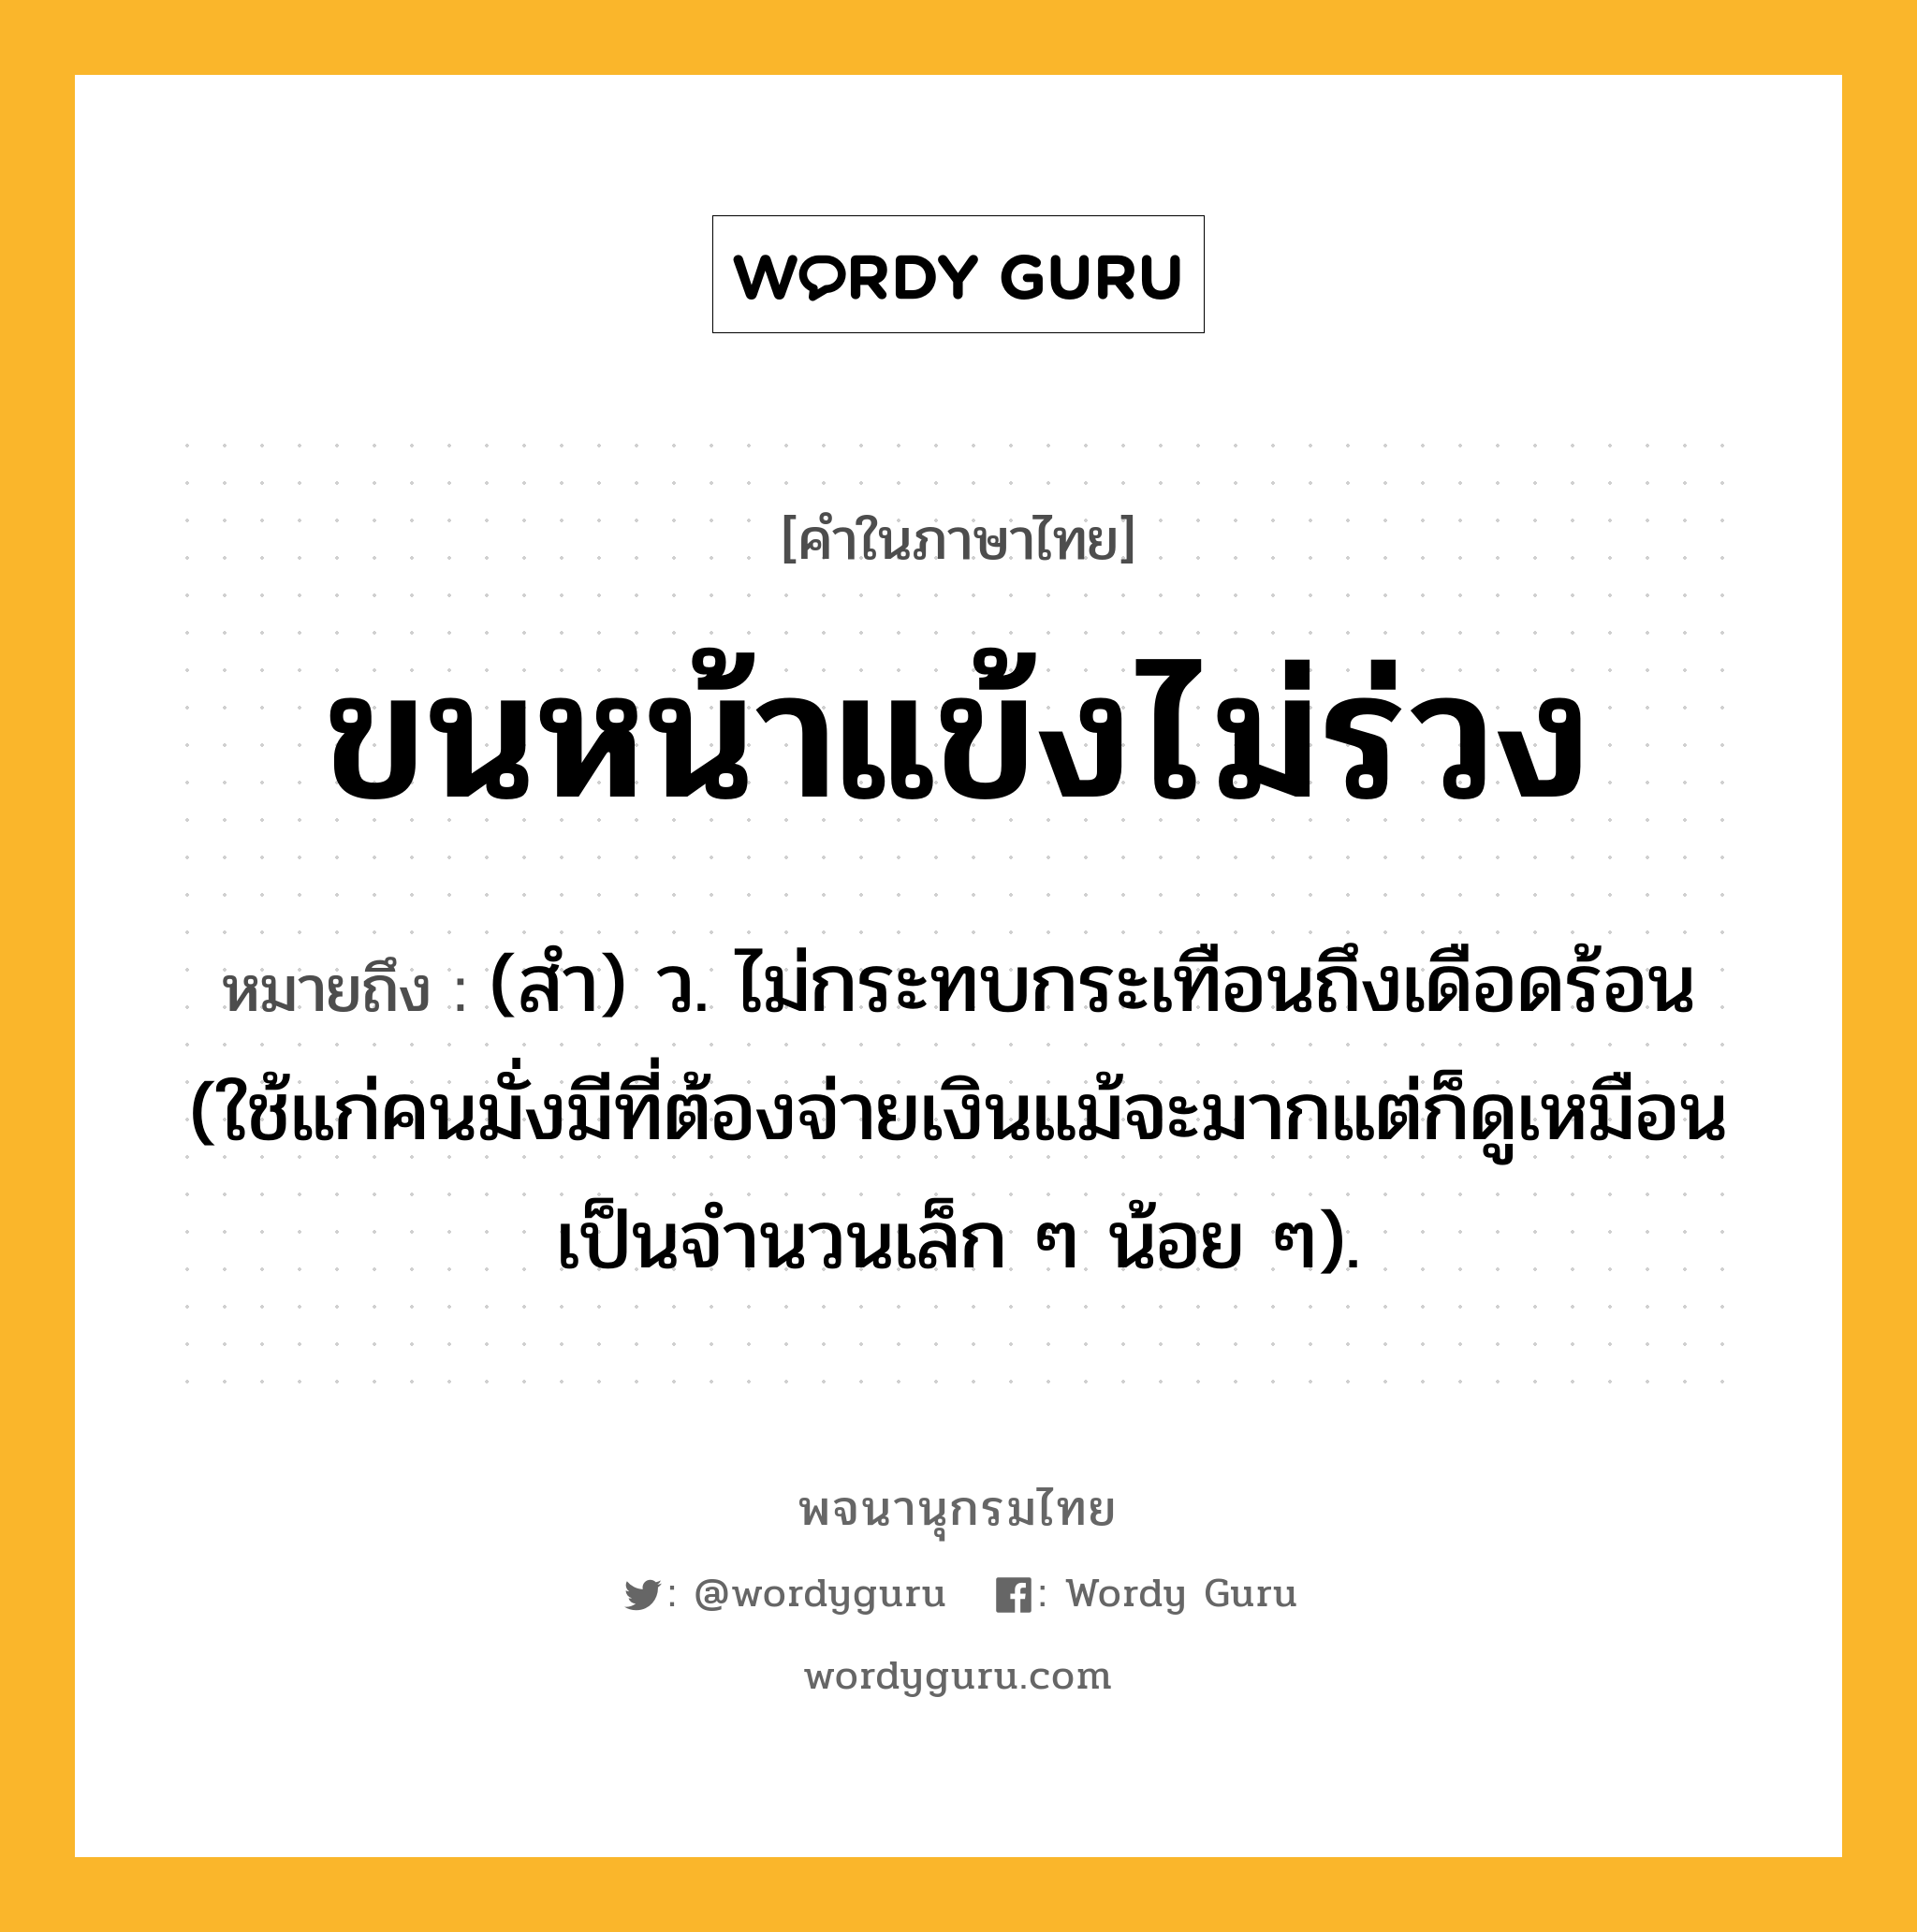 ขนหน้าแข้งไม่ร่วง หมายถึงอะไร?, คำในภาษาไทย ขนหน้าแข้งไม่ร่วง หมายถึง (สํา) ว. ไม่กระทบกระเทือนถึงเดือดร้อน (ใช้แก่คนมั่งมีที่ต้องจ่ายเงินแม้จะมากแต่ก็ดูเหมือนเป็นจํานวนเล็ก ๆ น้อย ๆ).